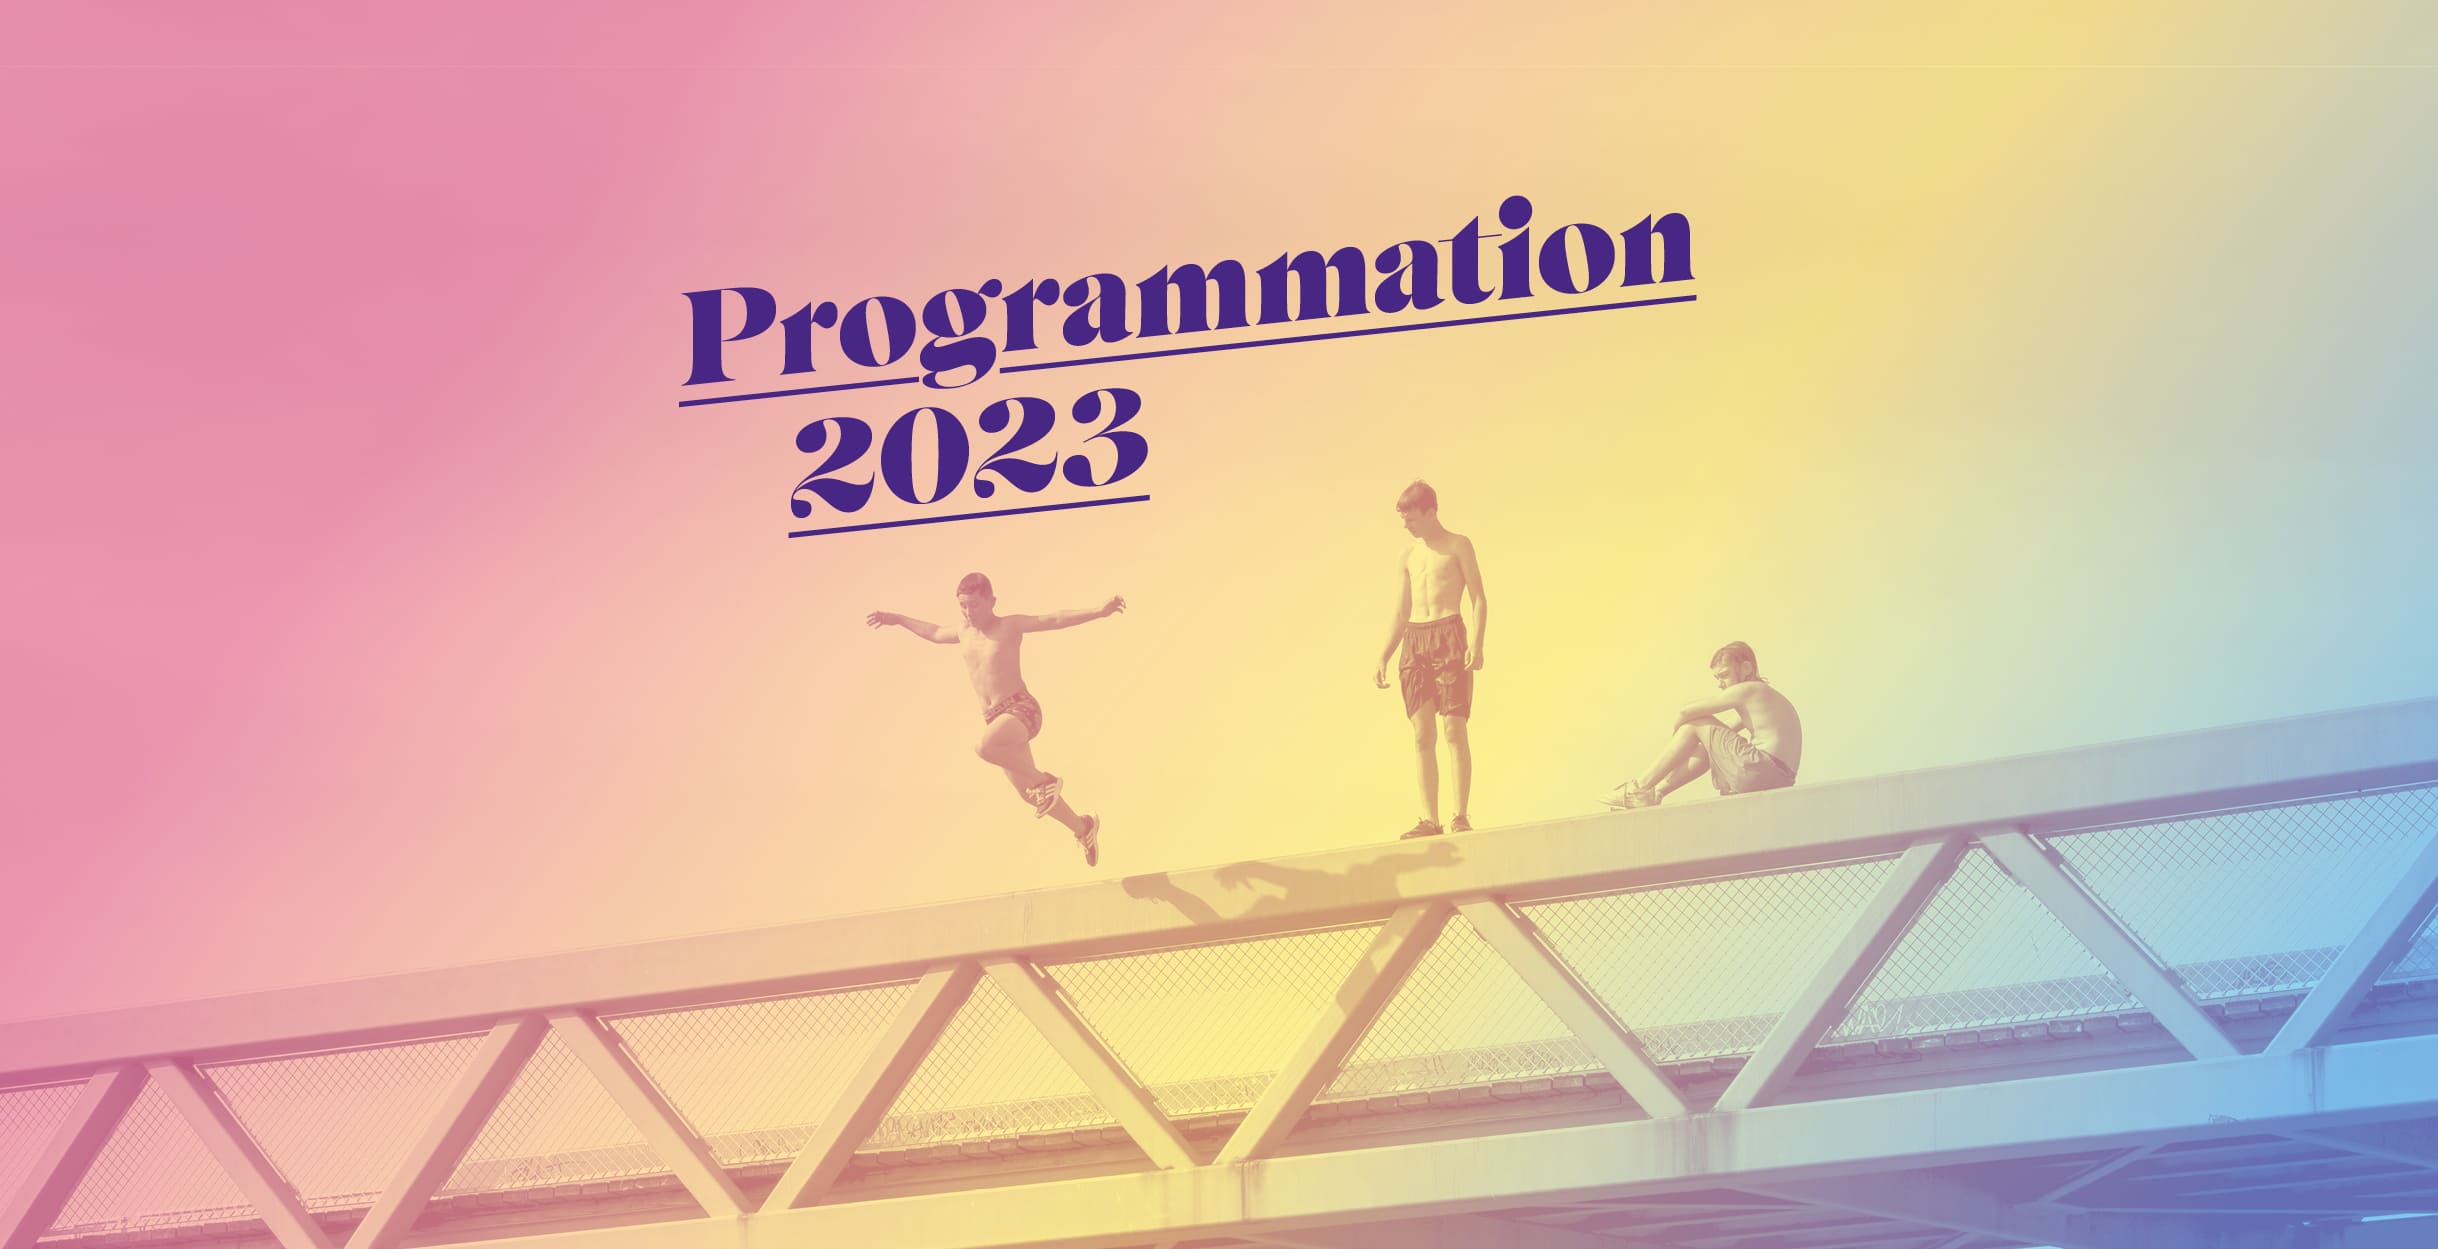 The 2023 program brochure is online!